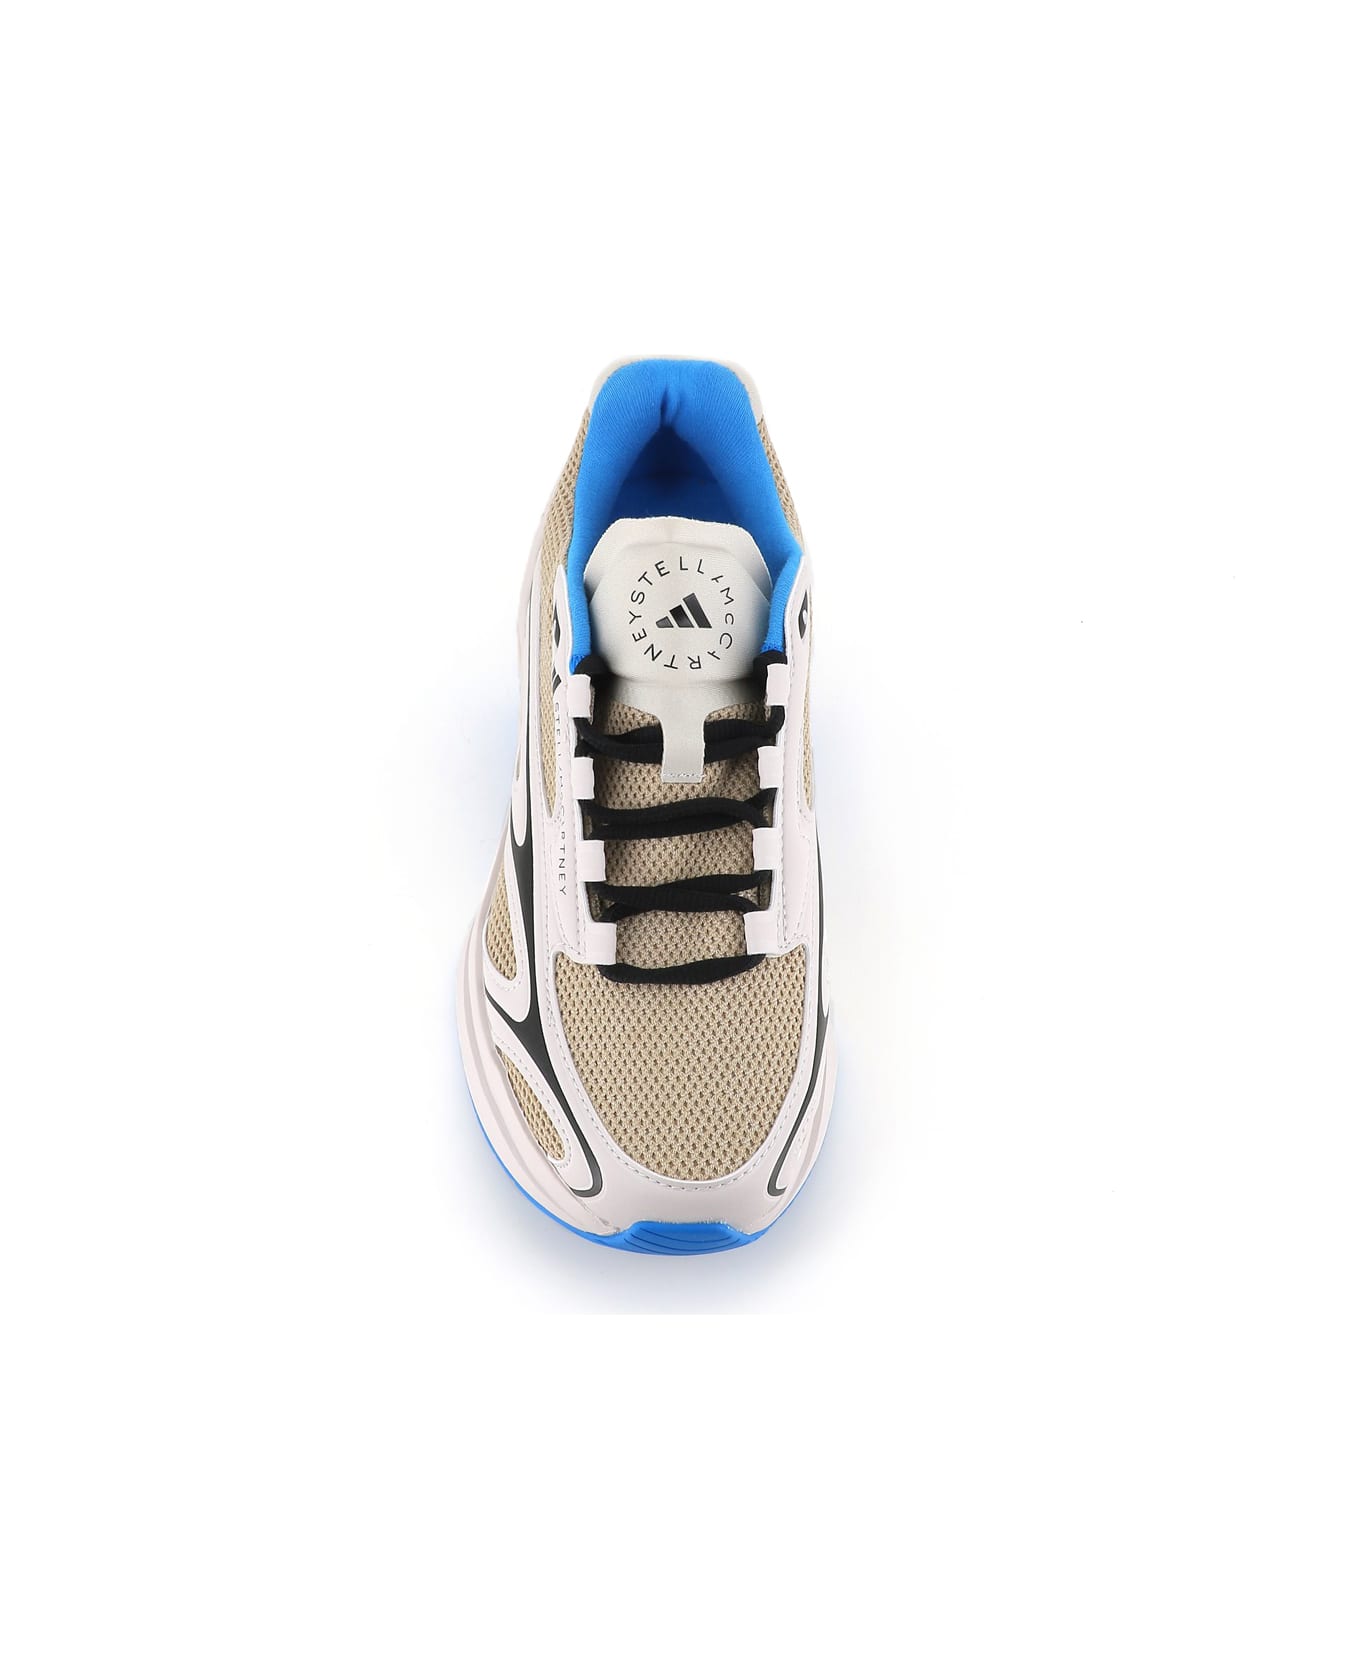 Adidas by Stella McCartney Sneaker Asmc Sportswear 2000 - Bianco/blue/nero スニーカー